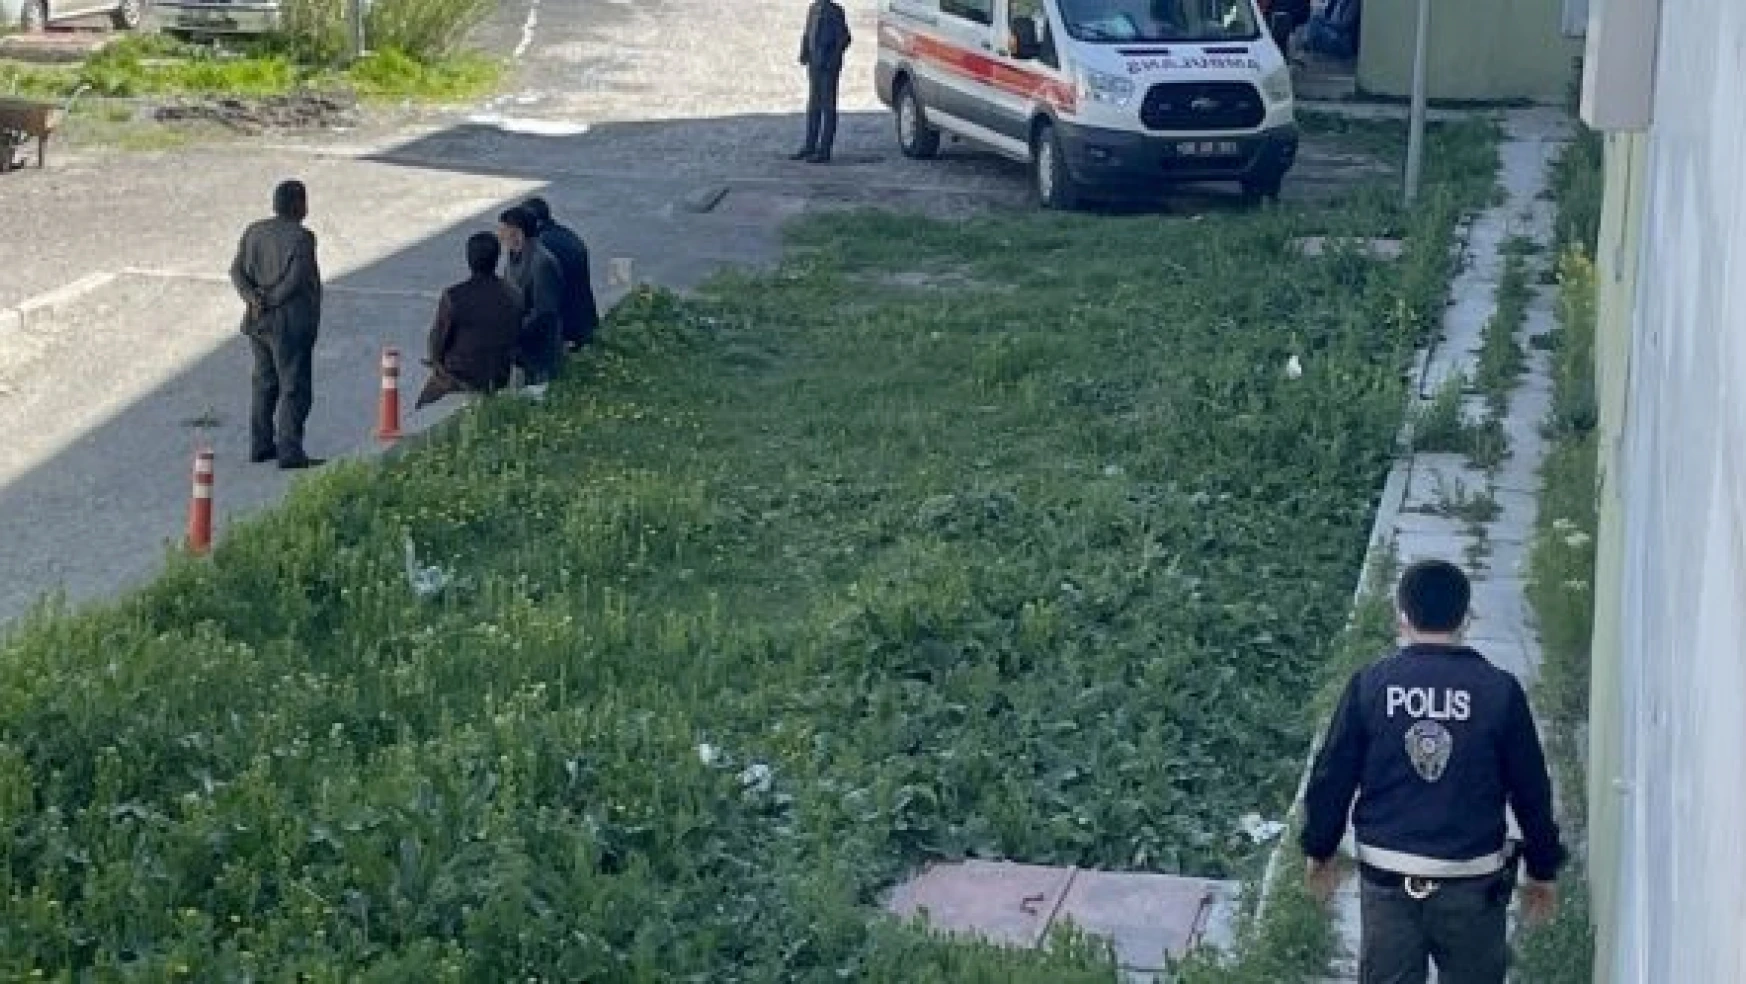 Kars'ta bir kişi 2 kardeşi tabancayla öldürdü!